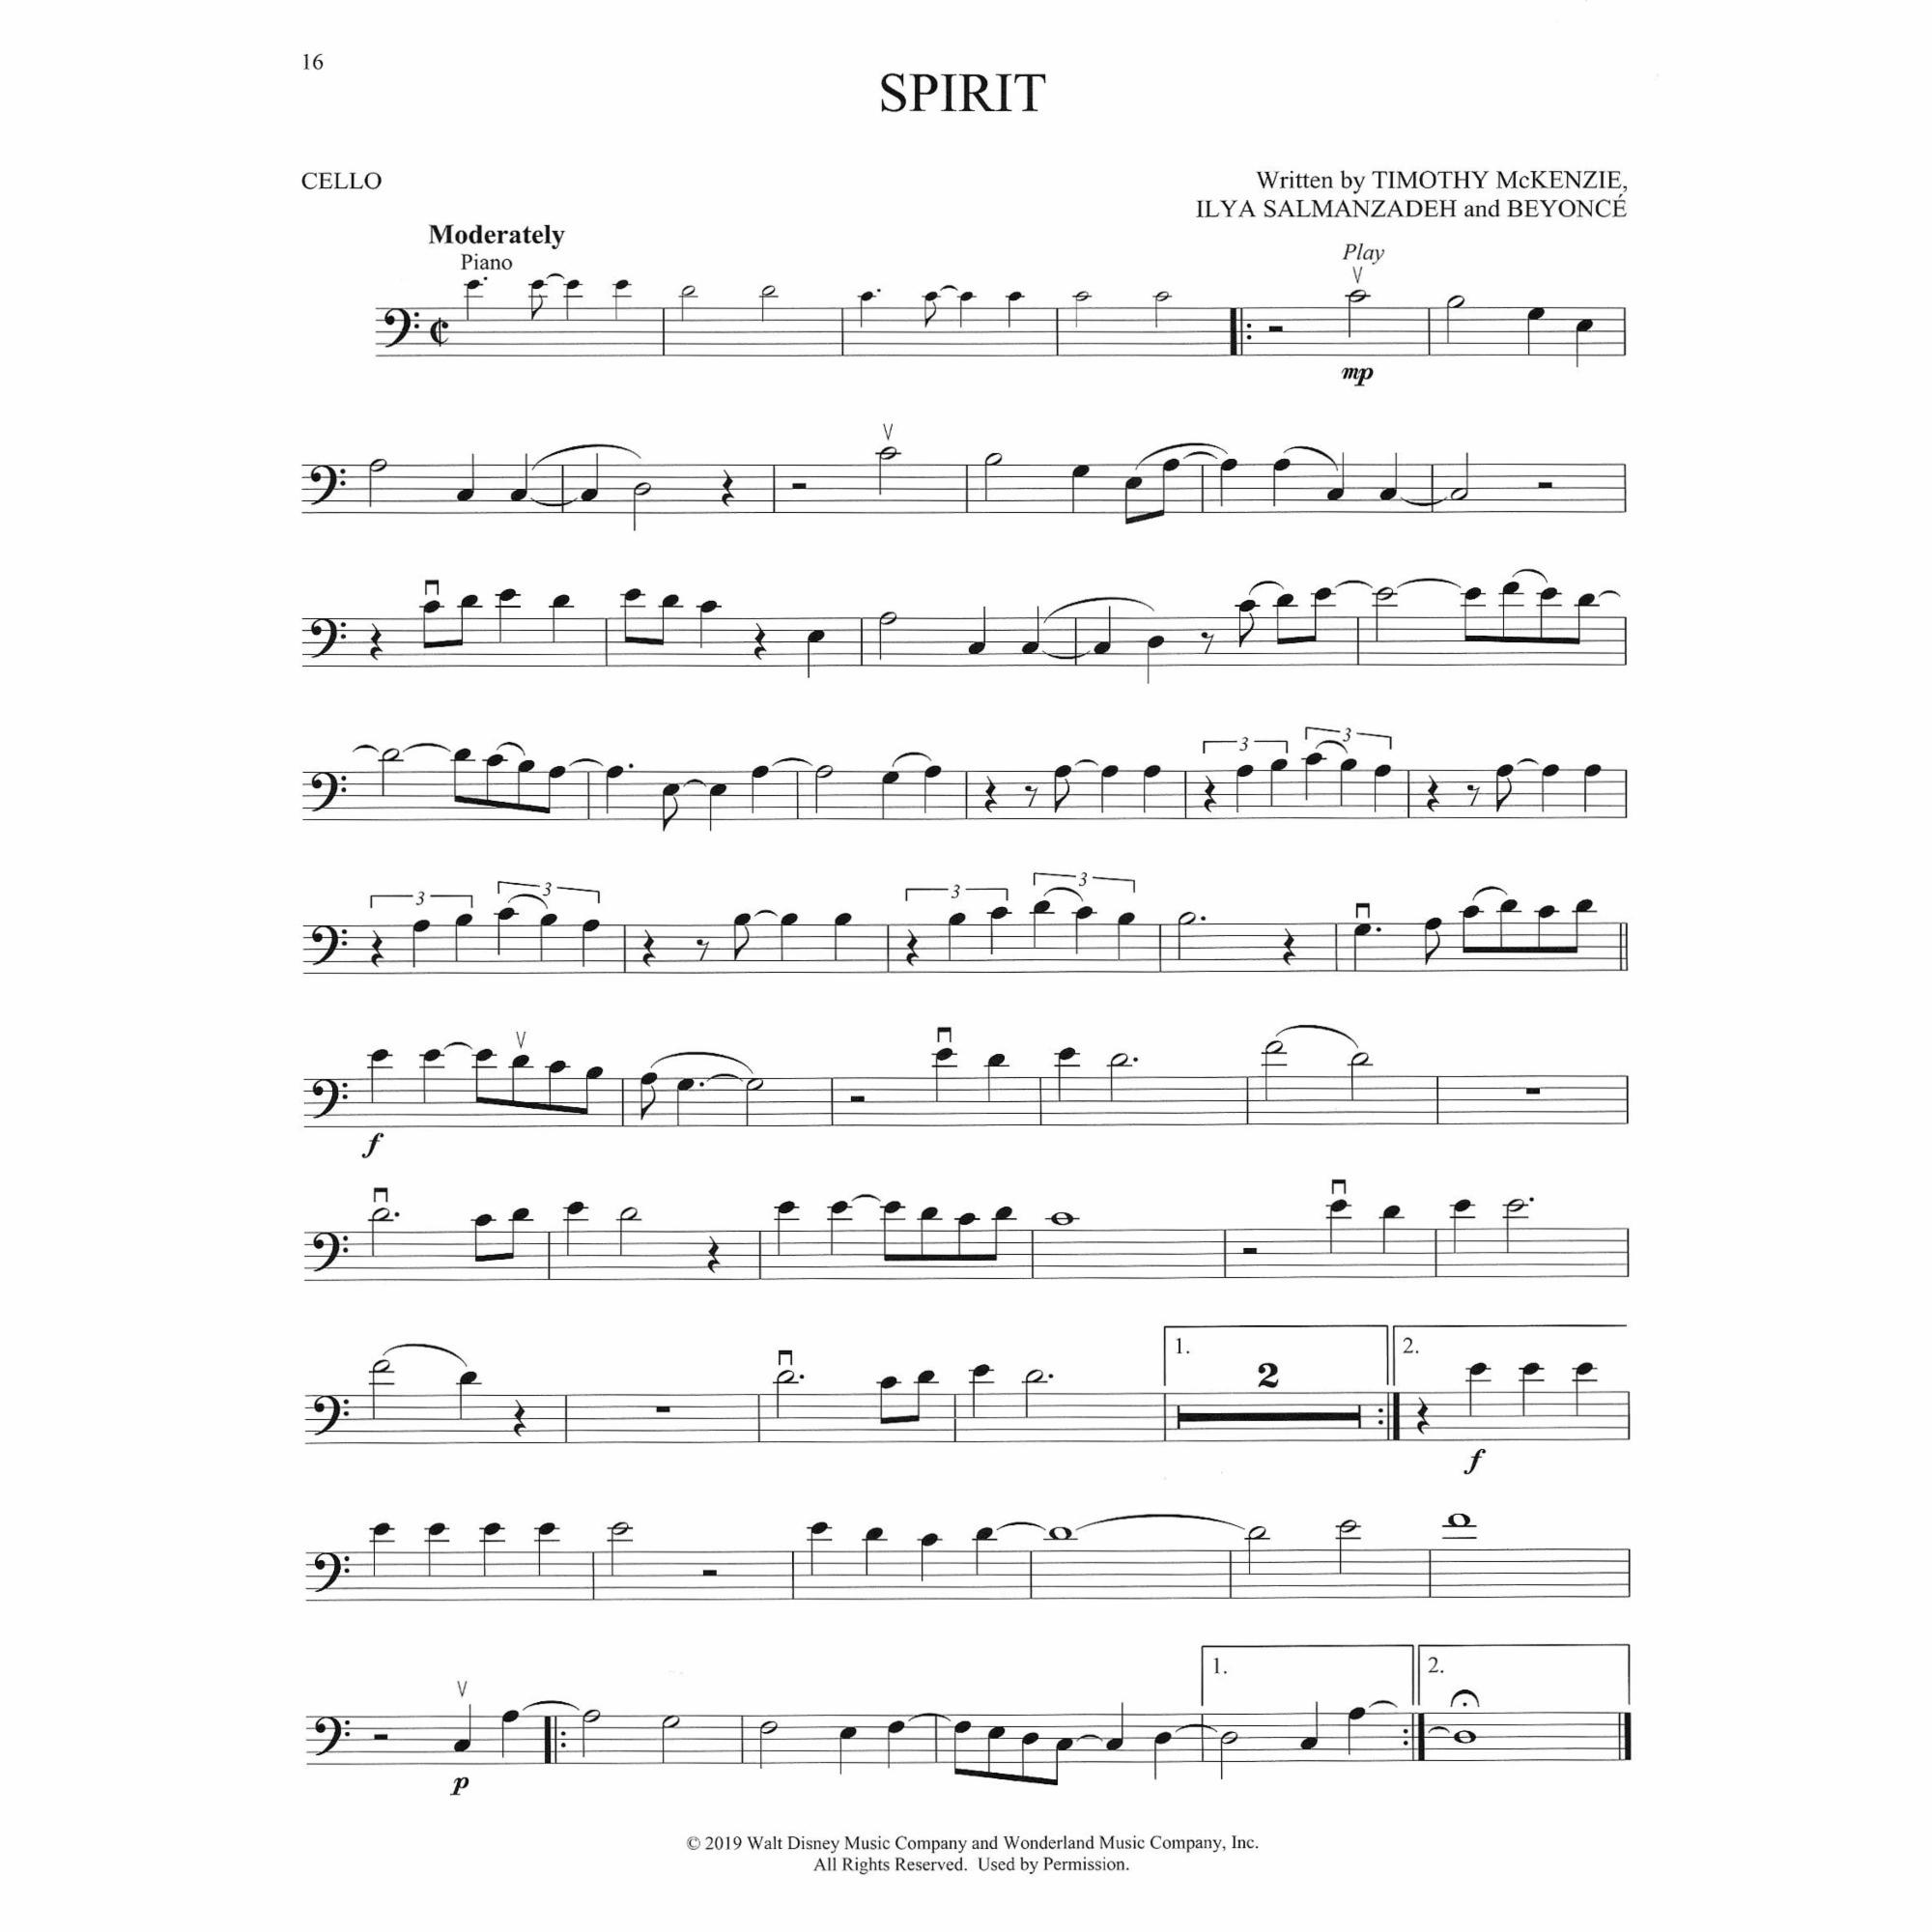 Sample: Cello (Pg. 16)